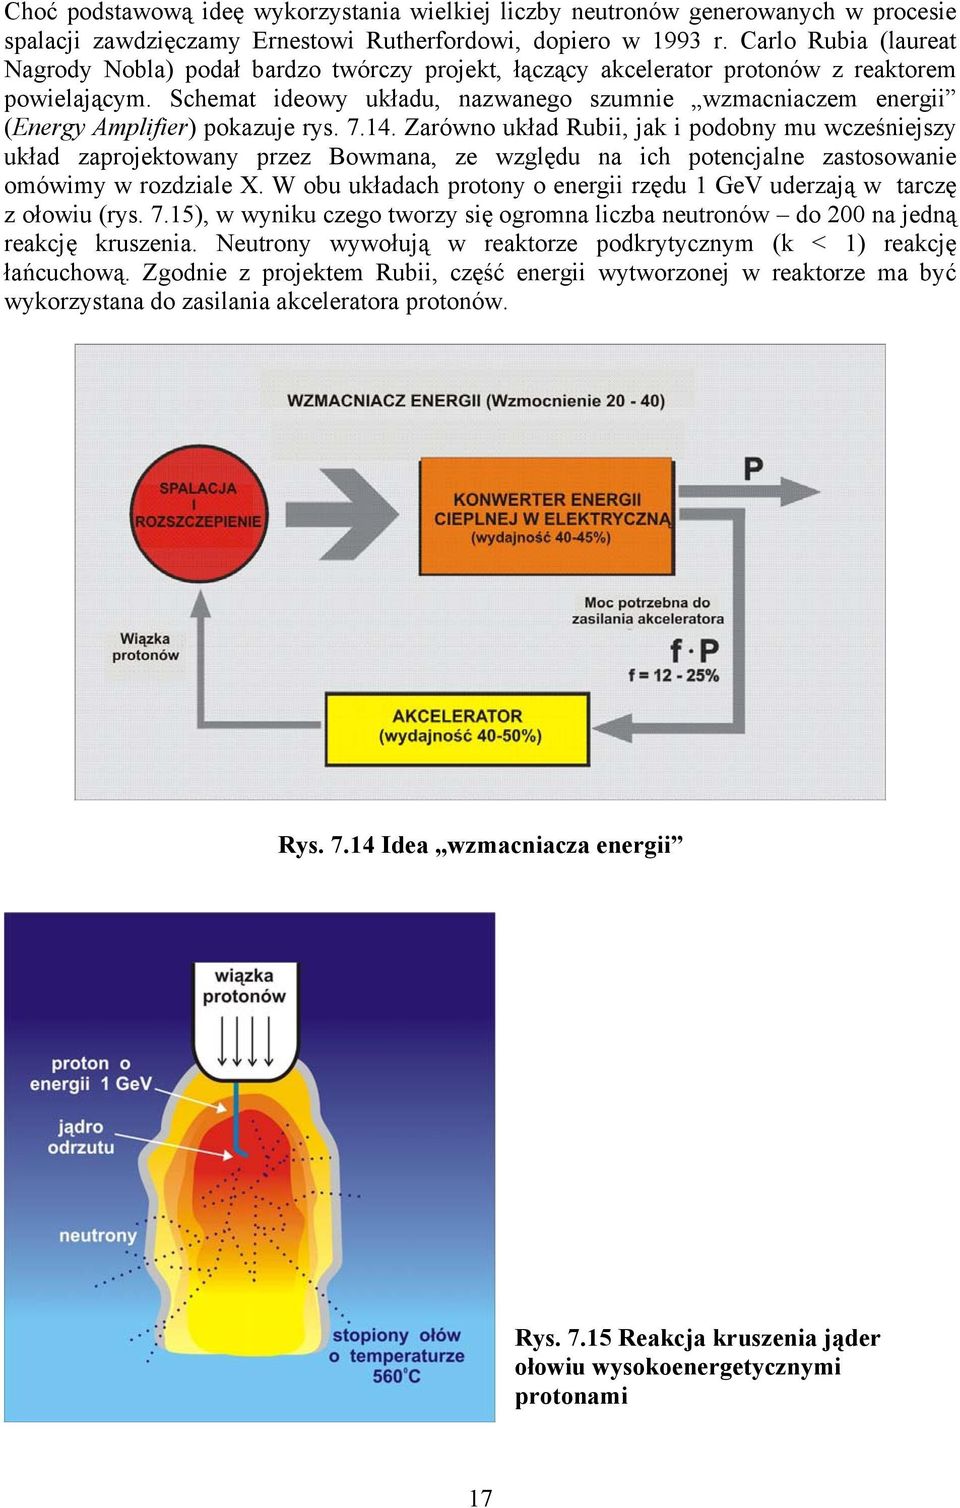 Schemat ideowy układu, nazwanego szumnie wzmacniaczem energii (Energy Amplifier) pokazuje rys. 7.14.